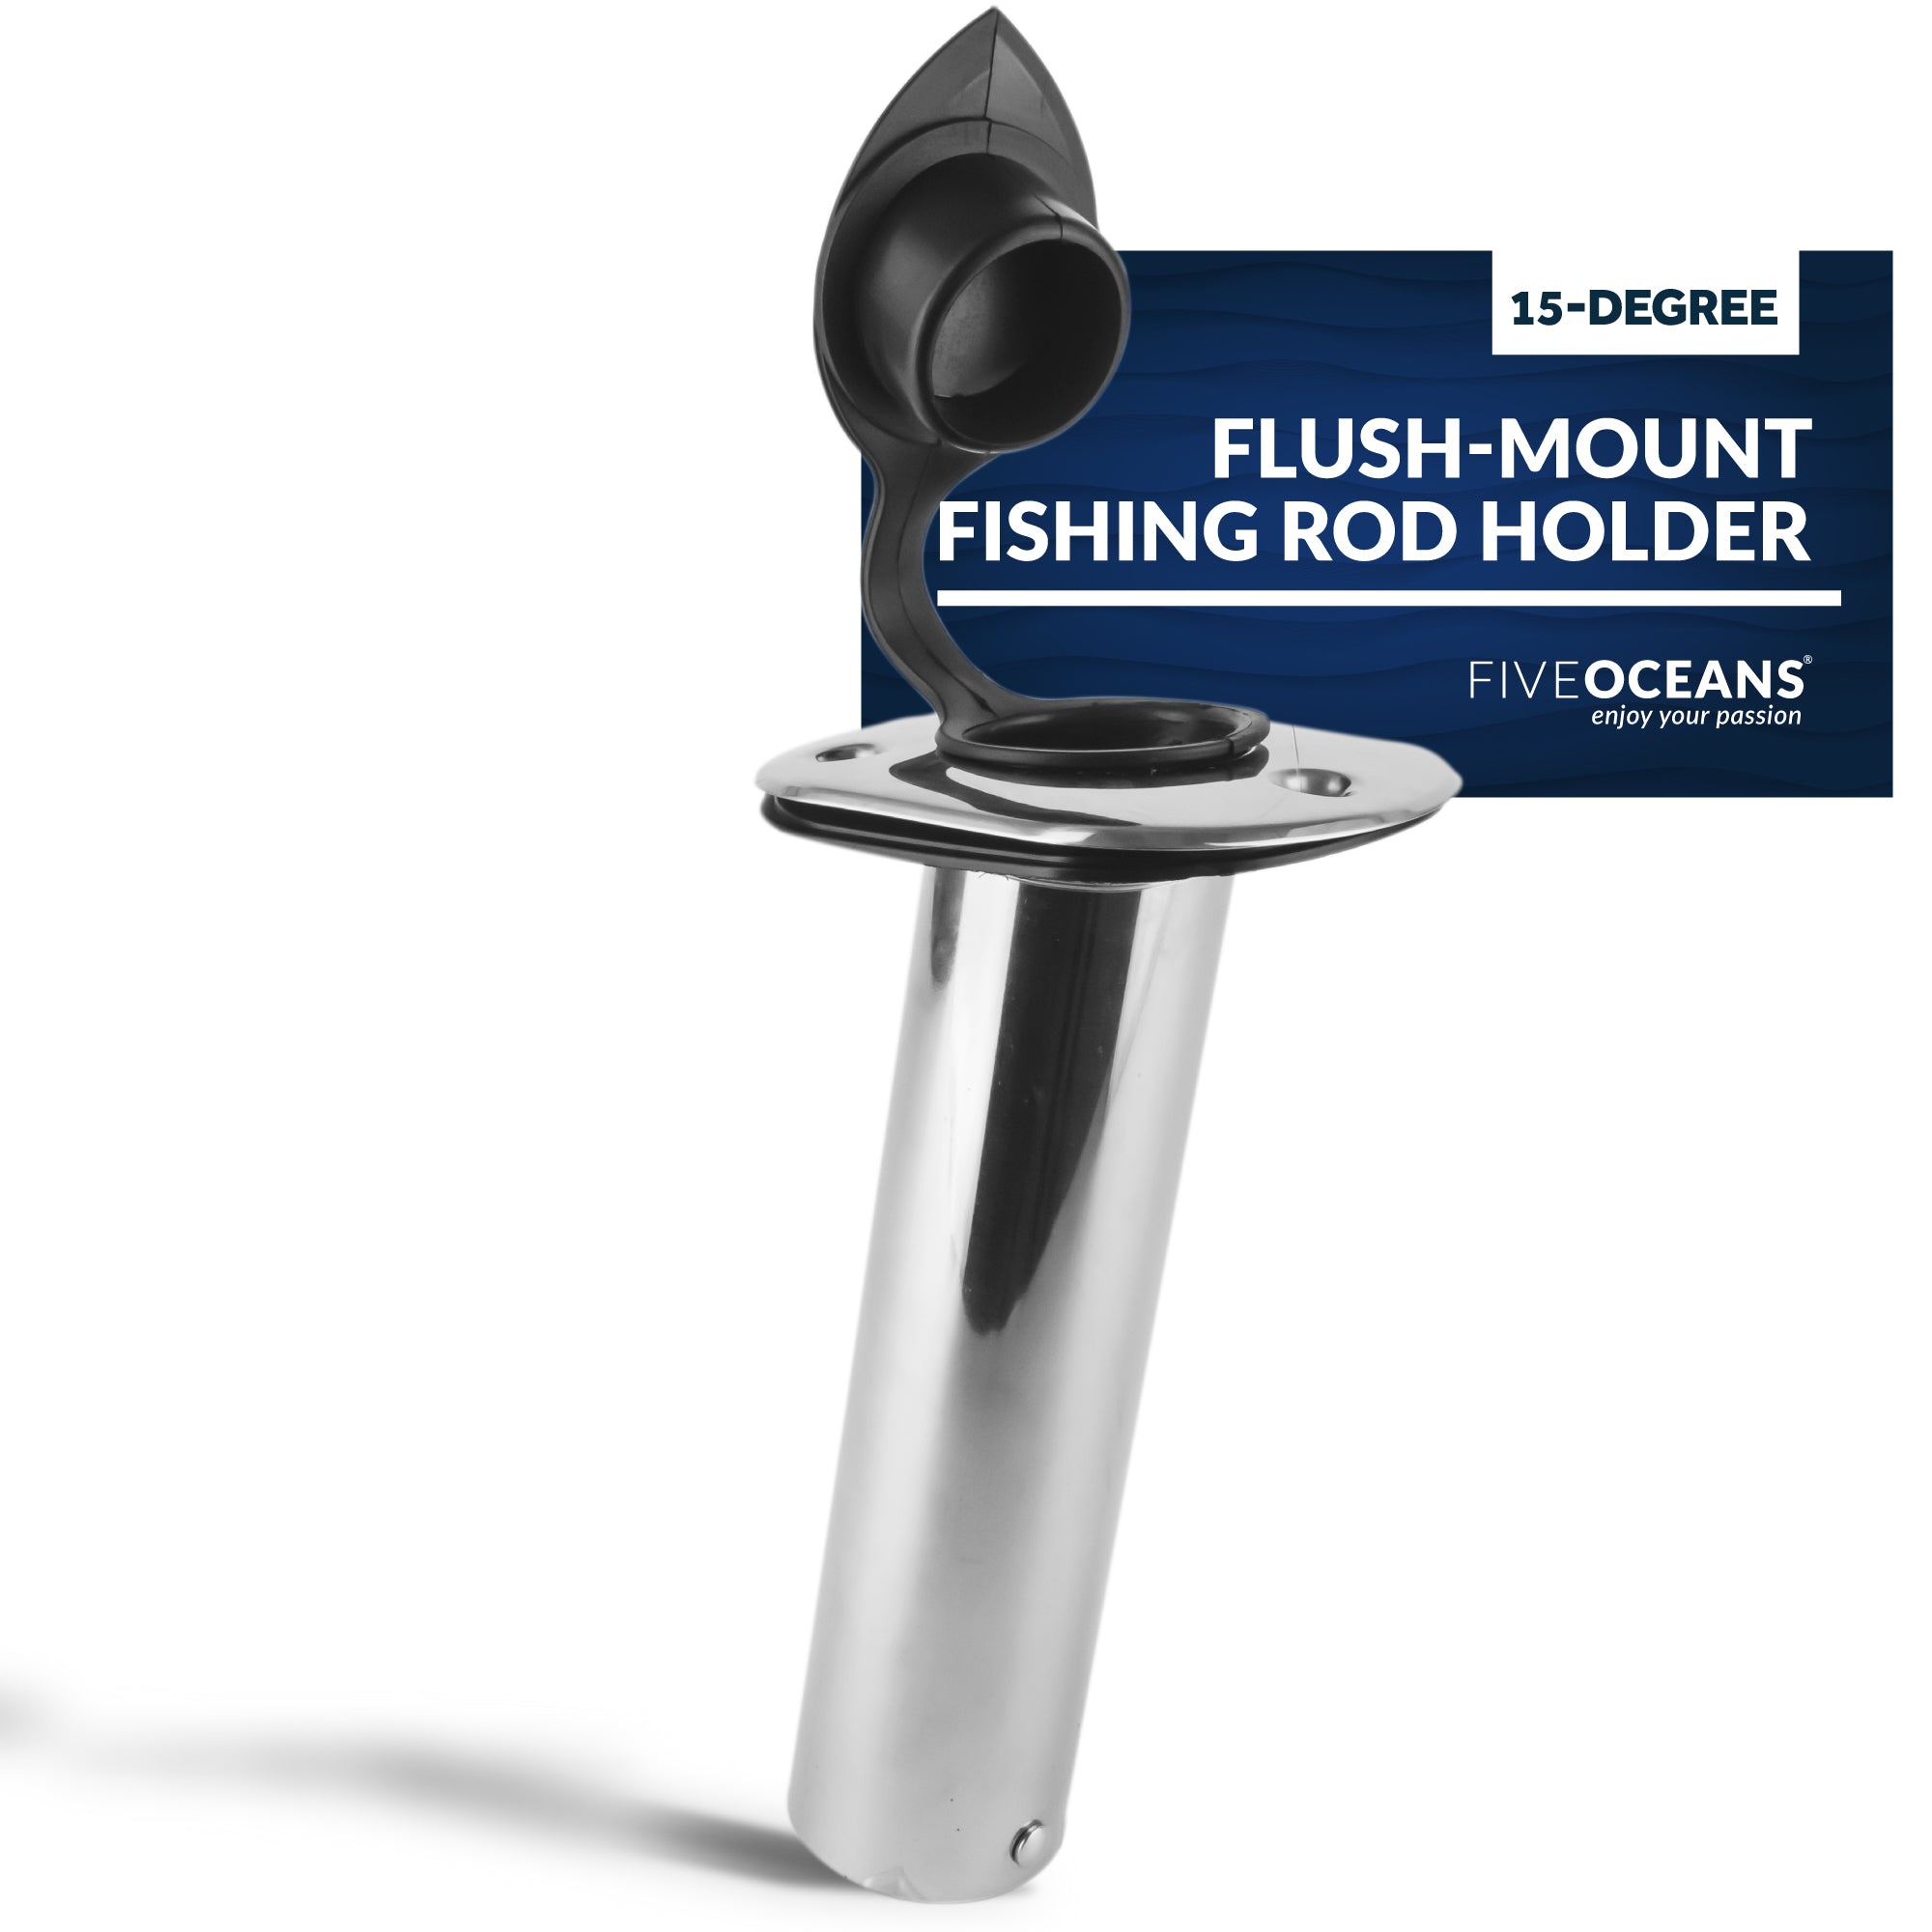 Stainless Steel Flush-Mount Fishing Rod Holder, 15-Degree Top Flange